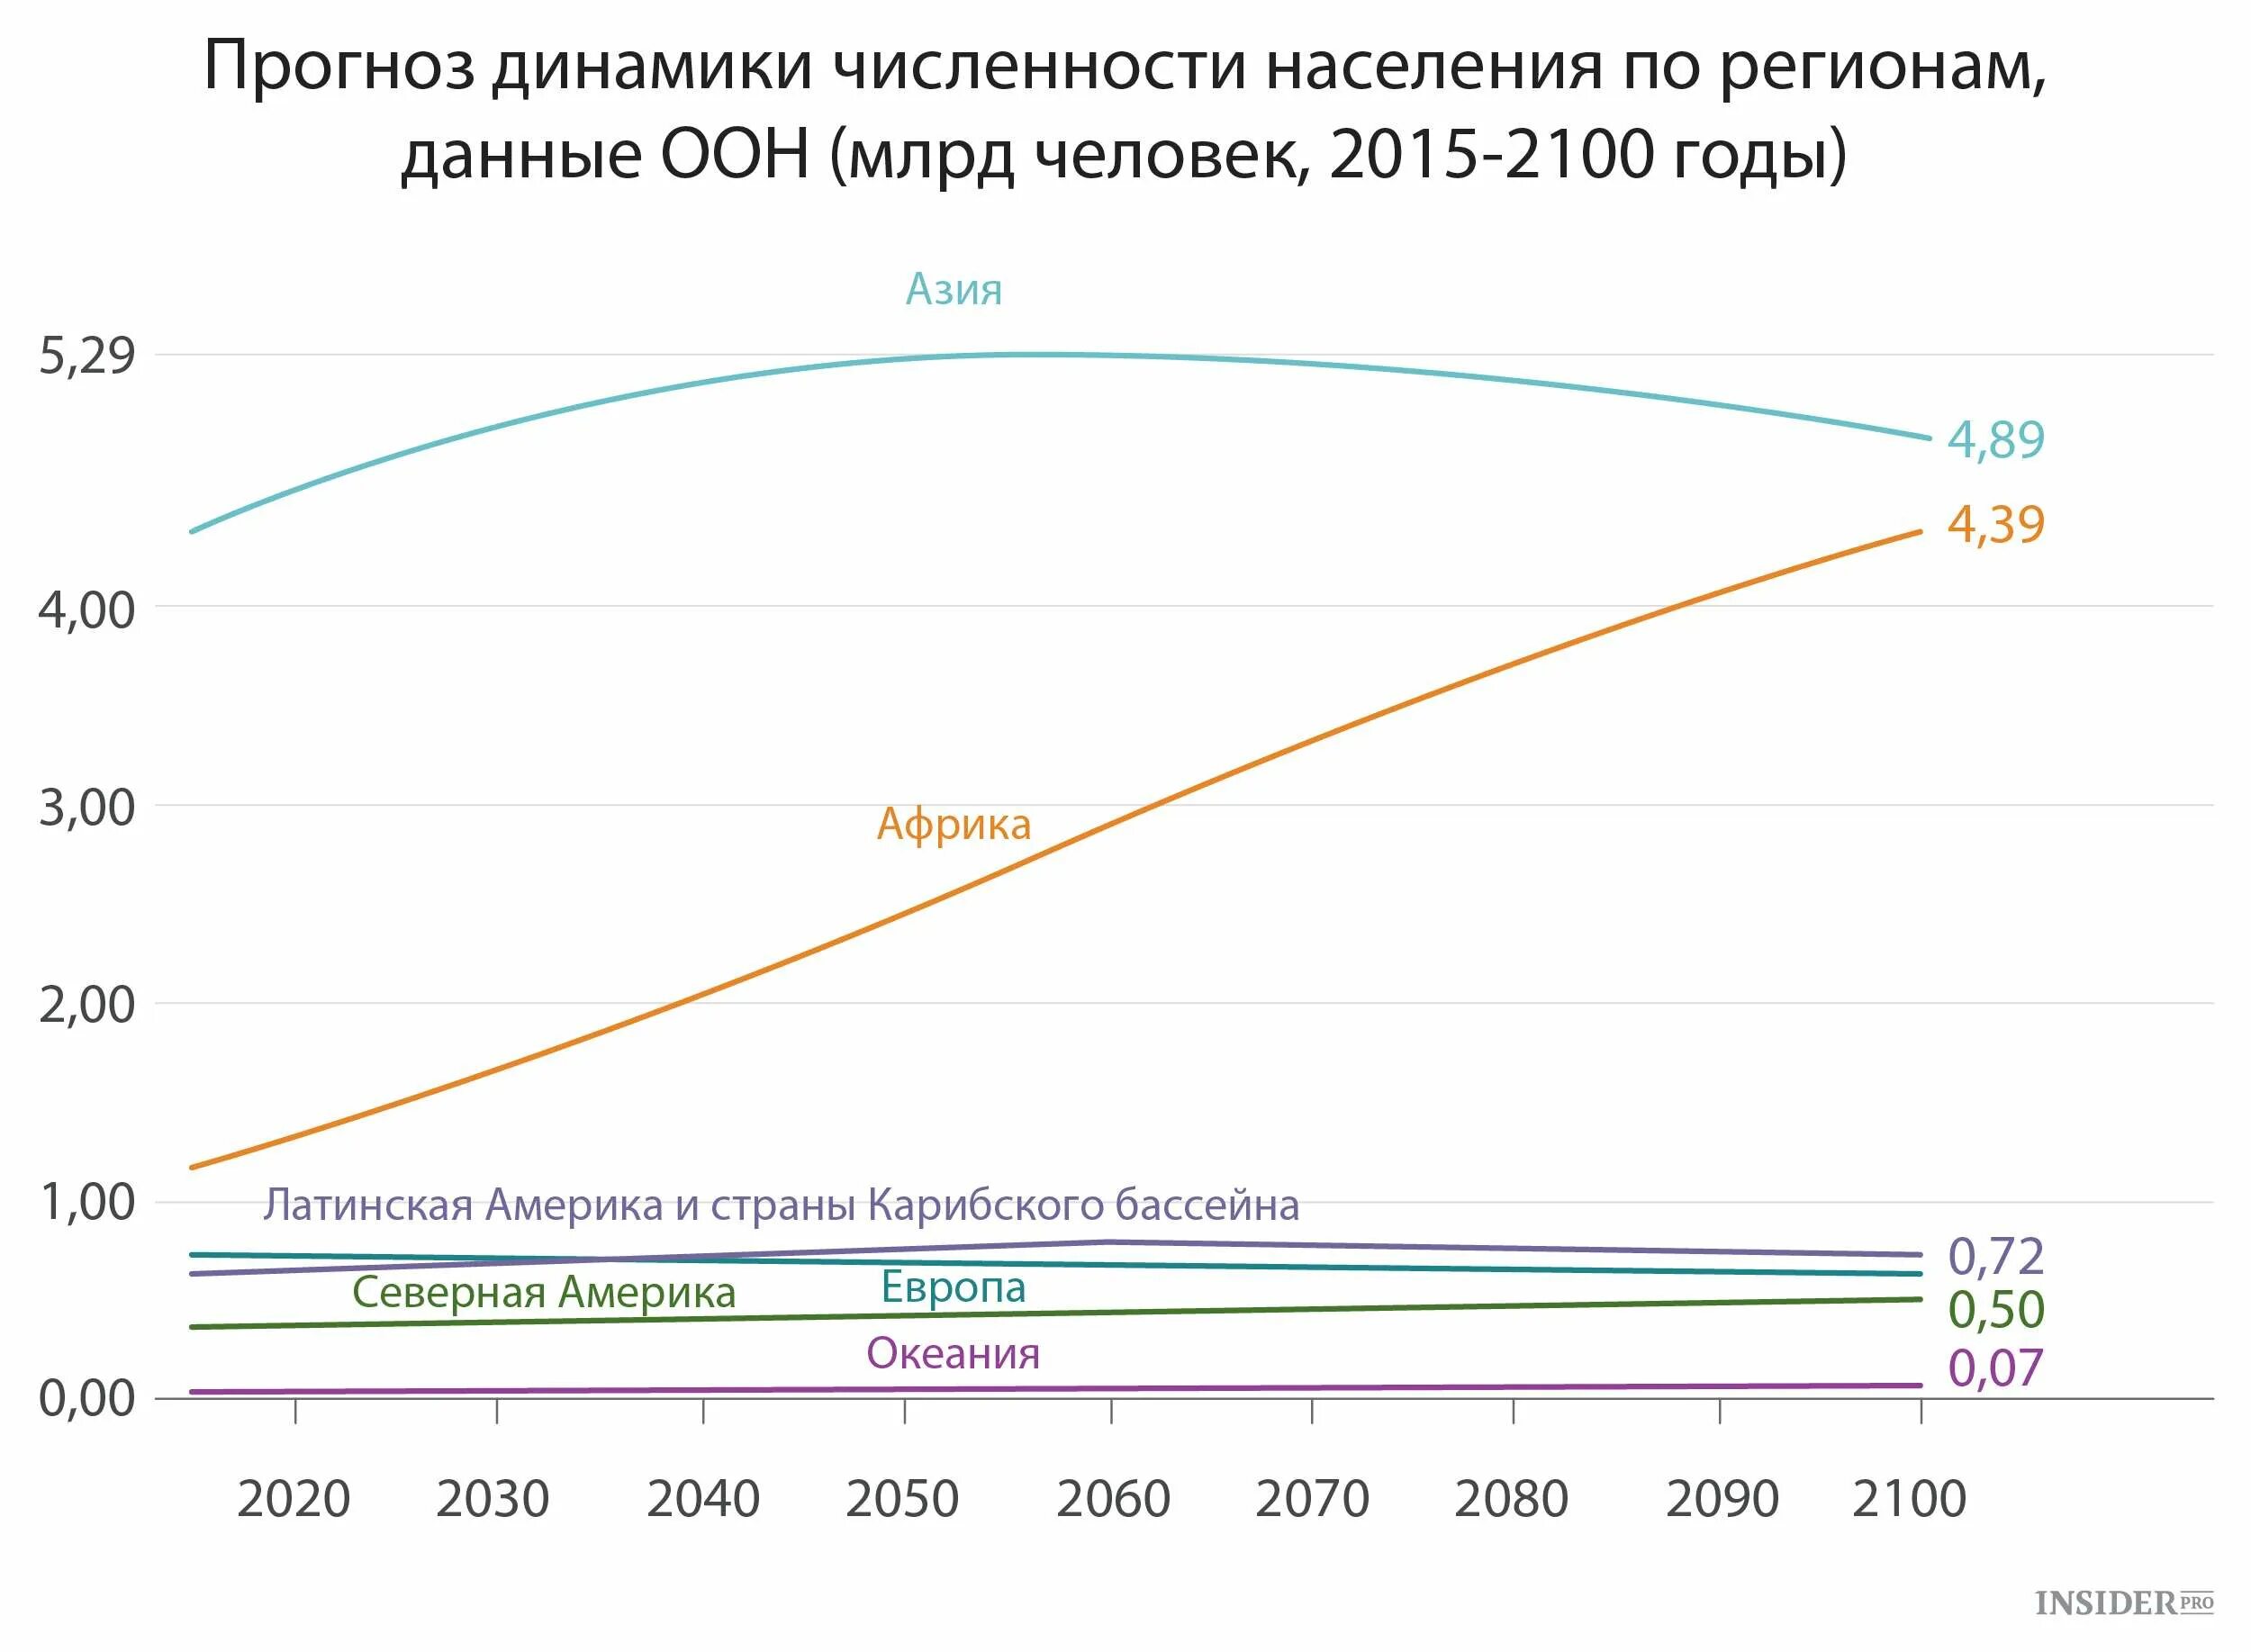 Динамика численности населения тысяч человек. Численность населения. Рост населения планеты. Численность населения на 2100 год. Диаграмма роста населения.